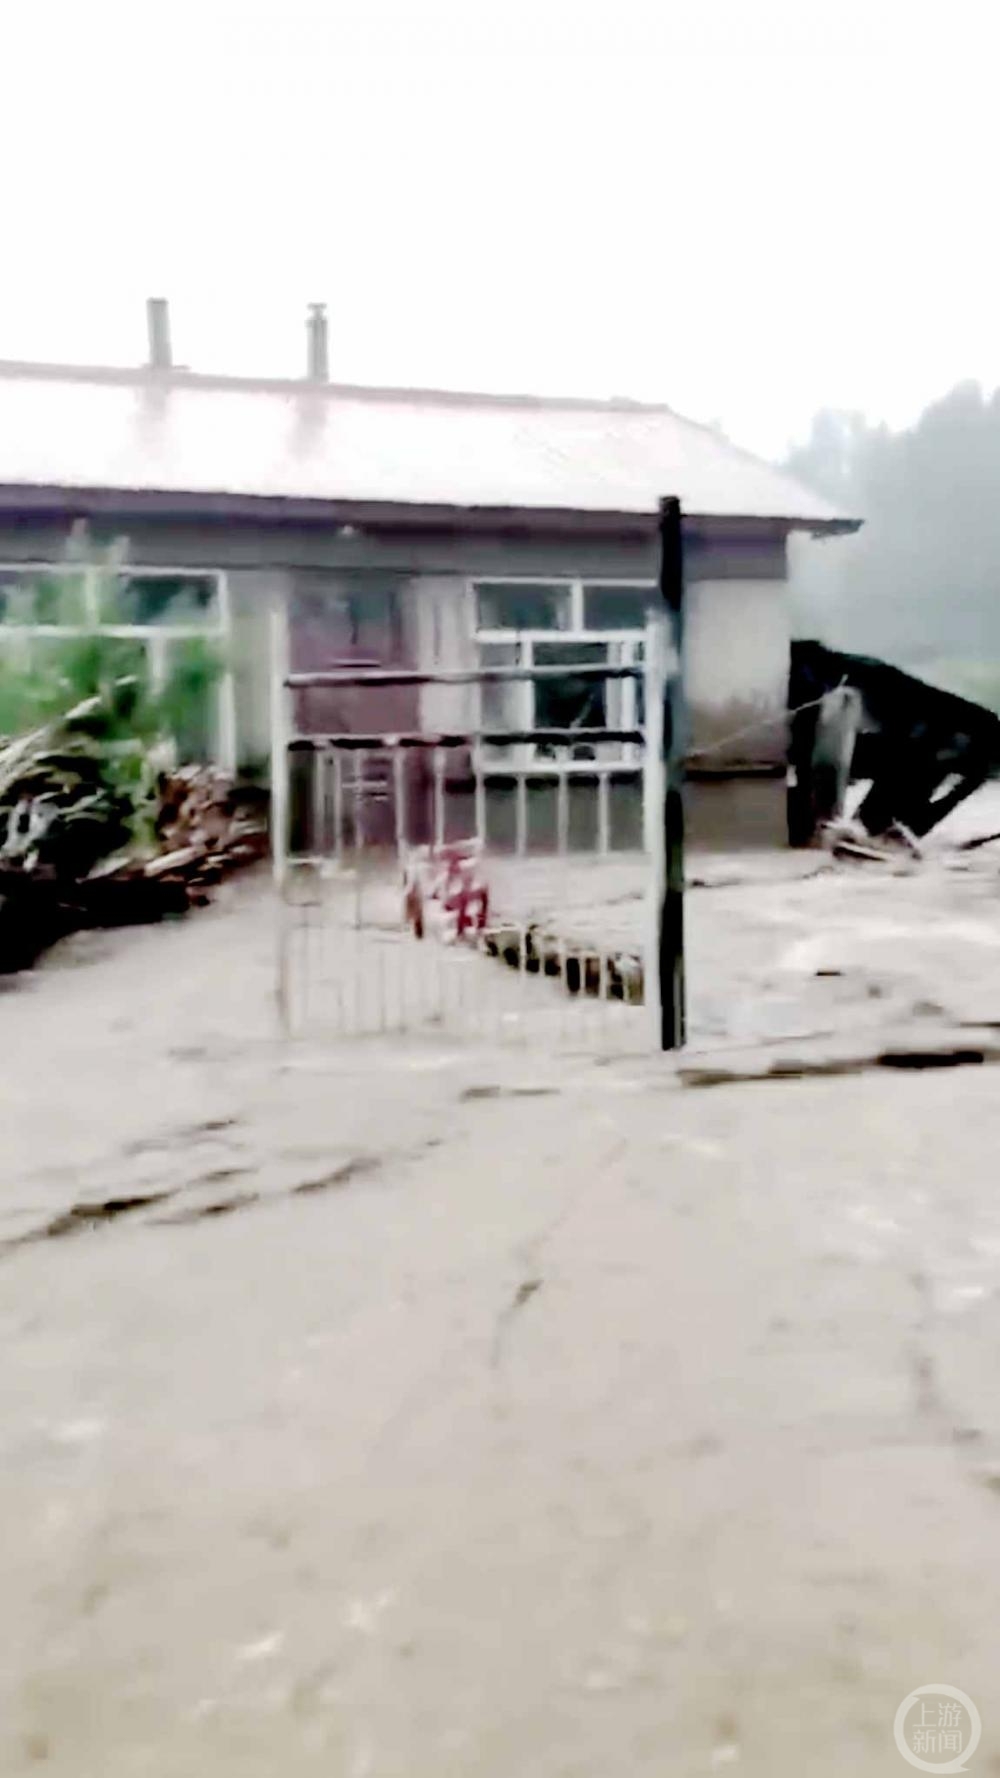 ▲当地居民住房被淹。 图片来源/截屏